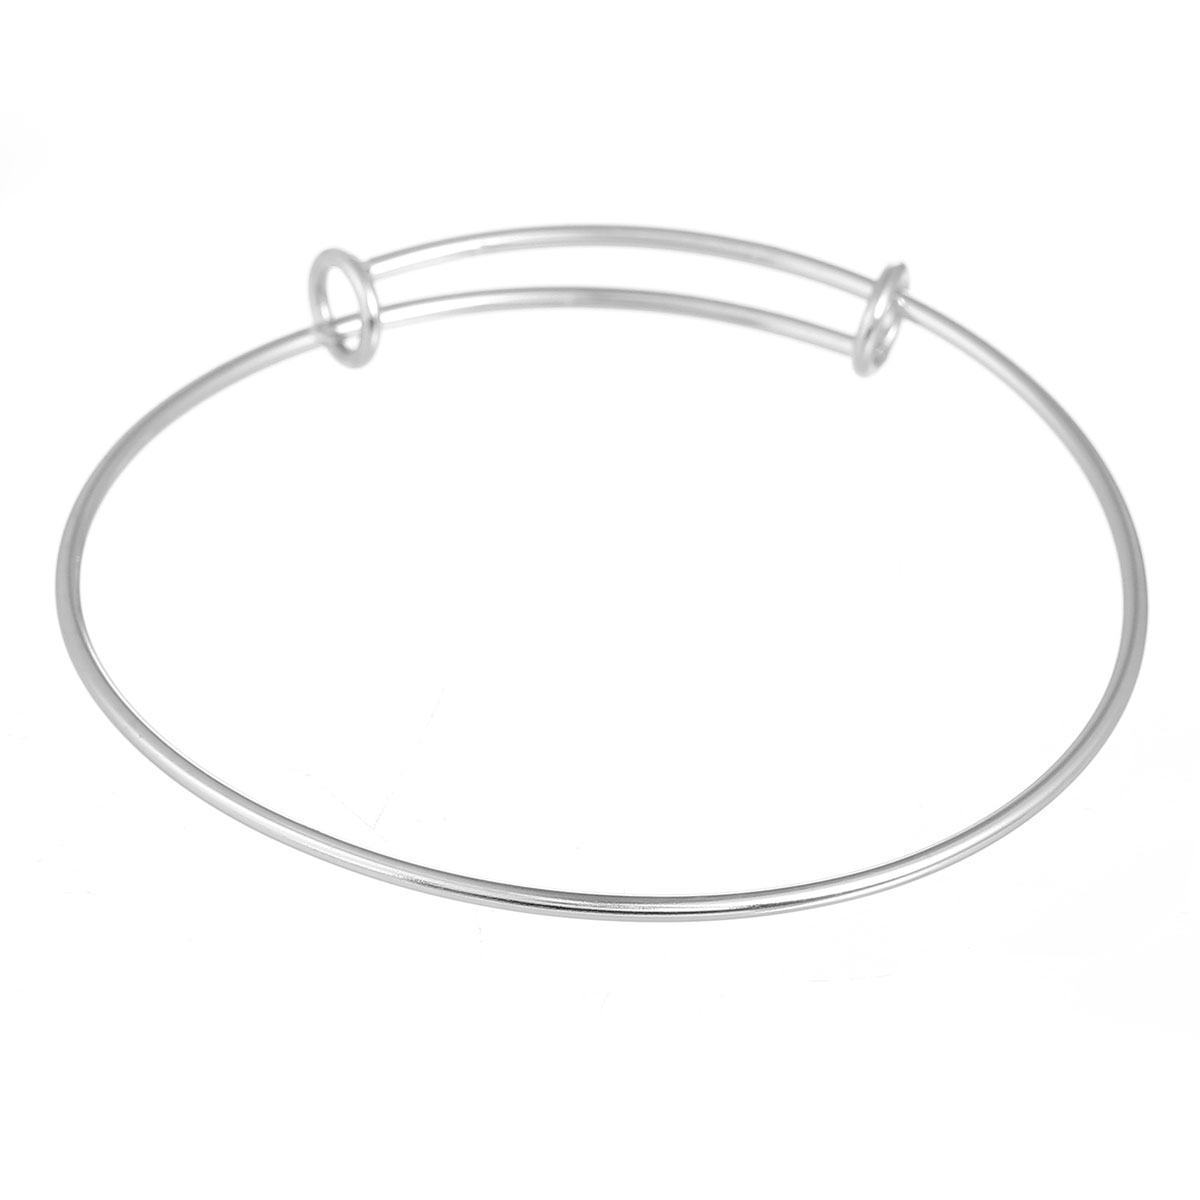 Support bracelet jonc rond réglable en acier inoxydable - 21cm